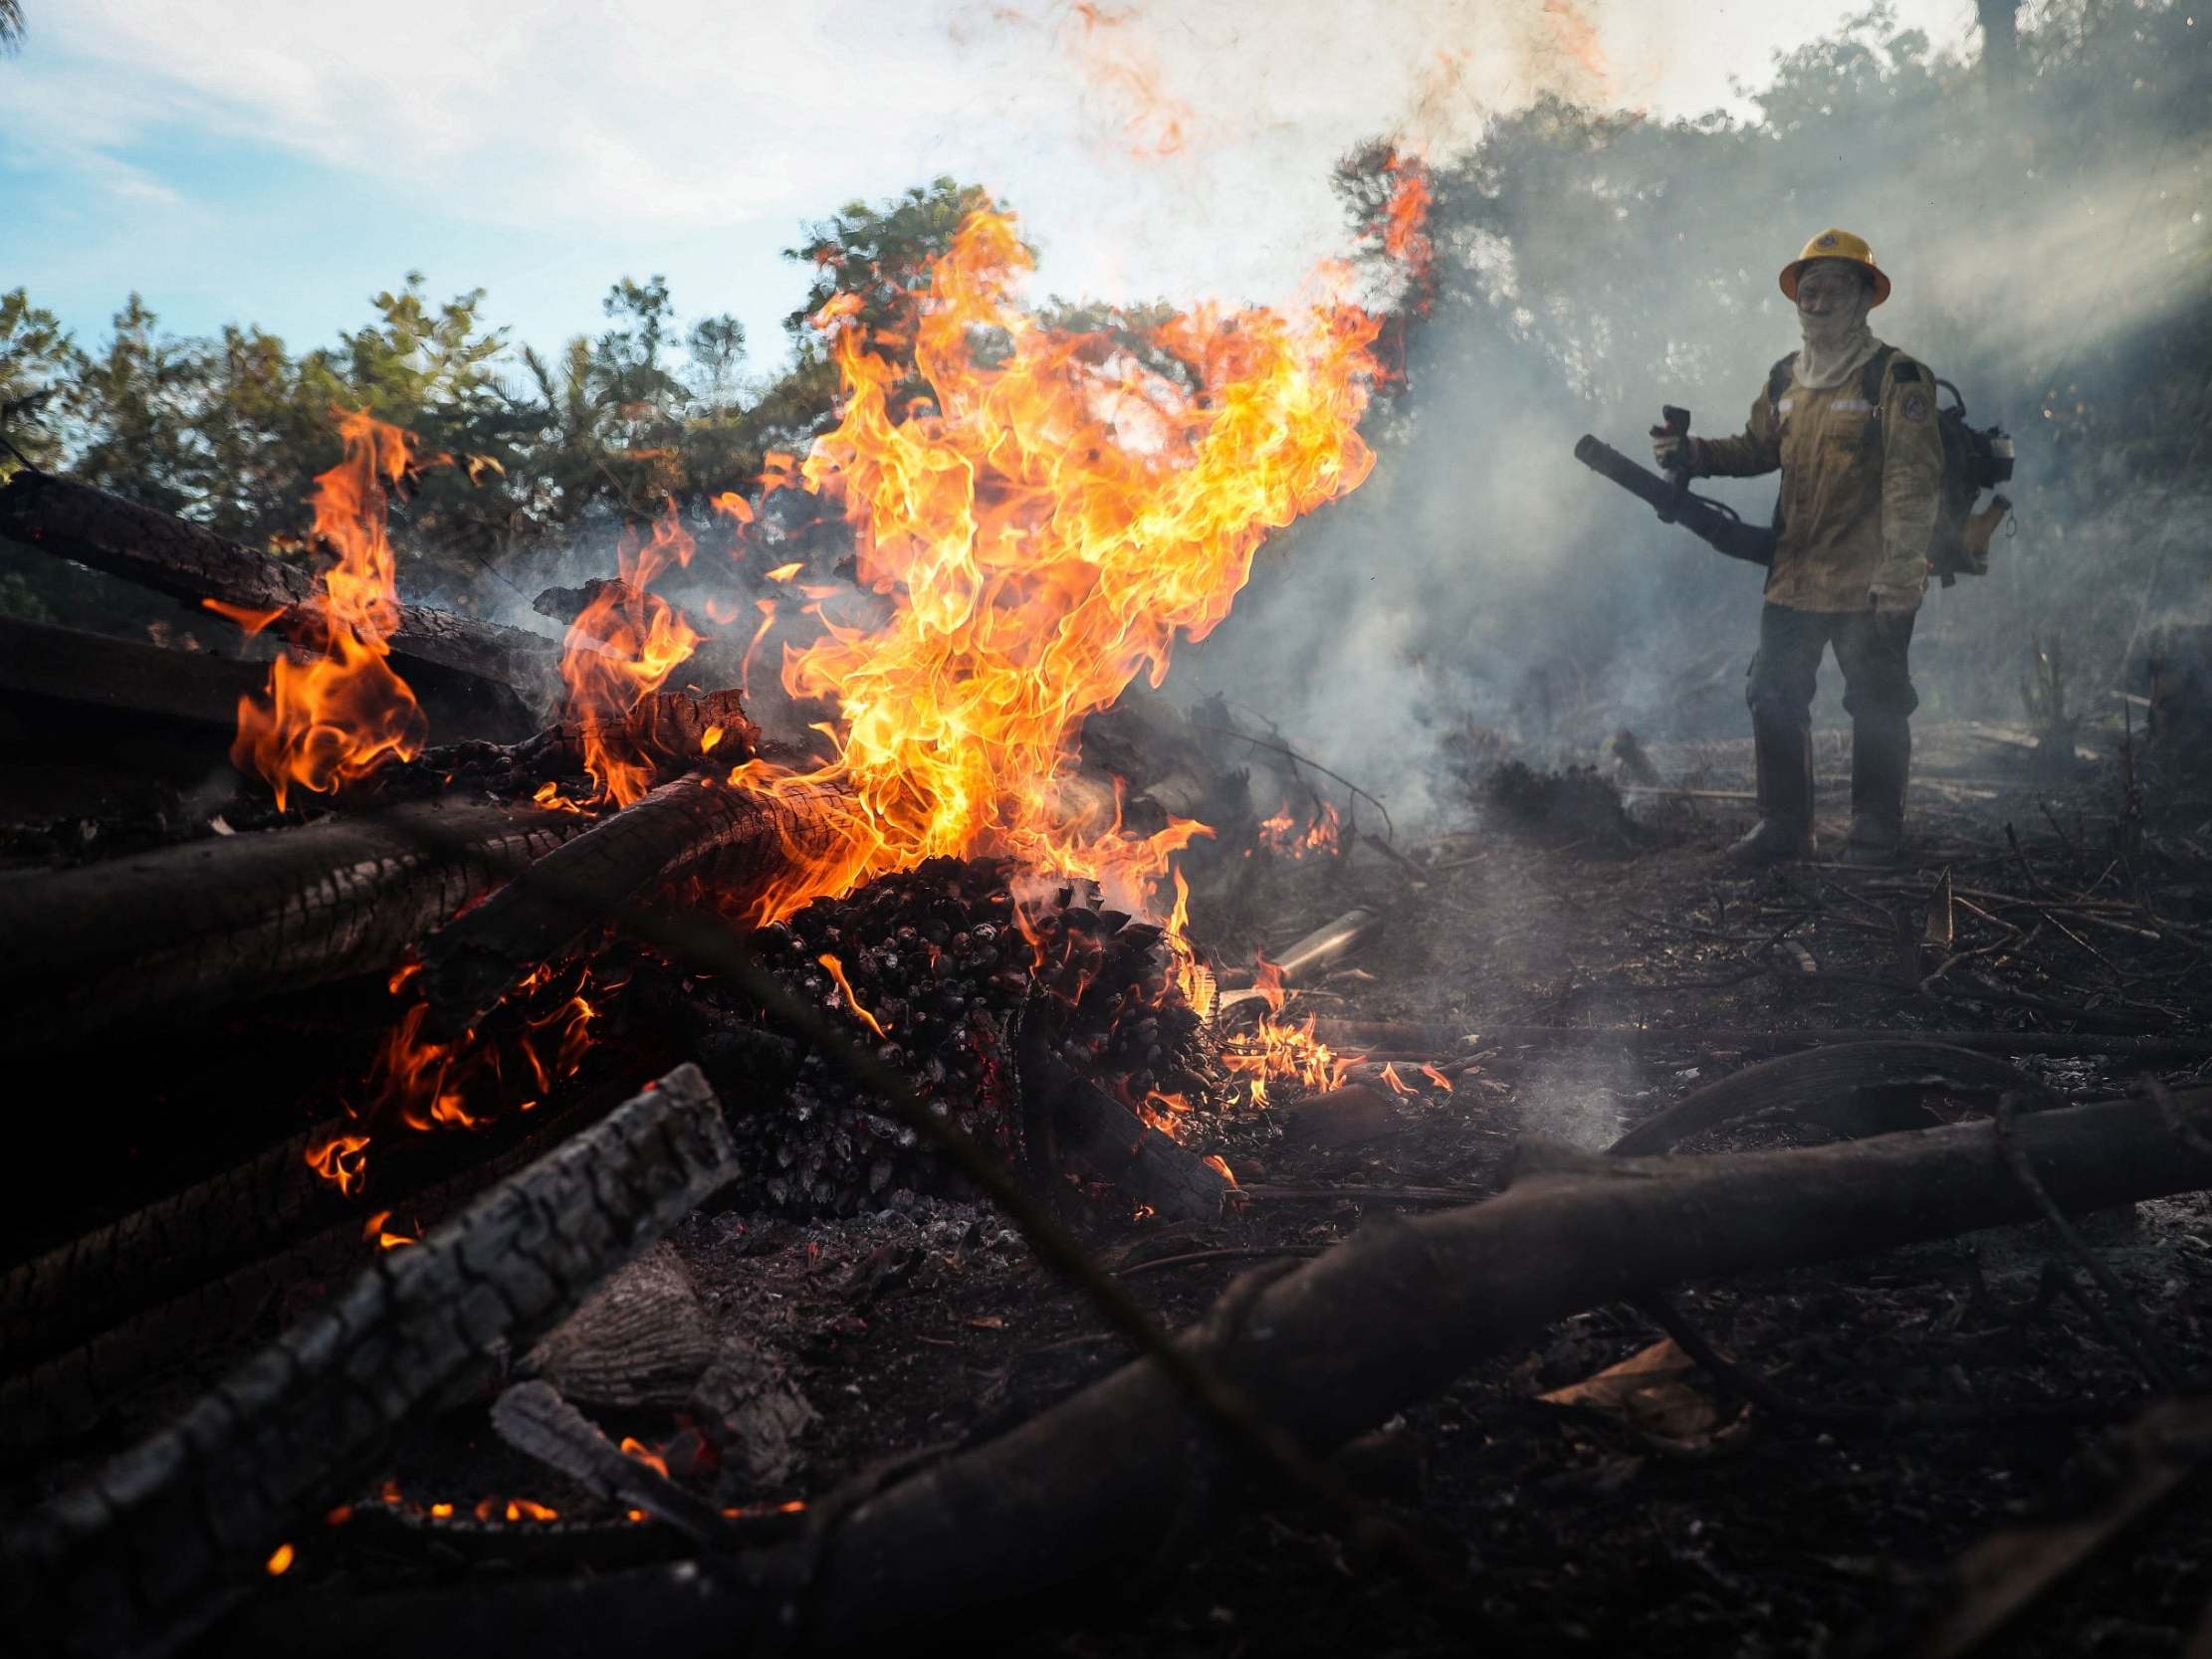 Brazil rainforest deforestation soared 85% in 2019